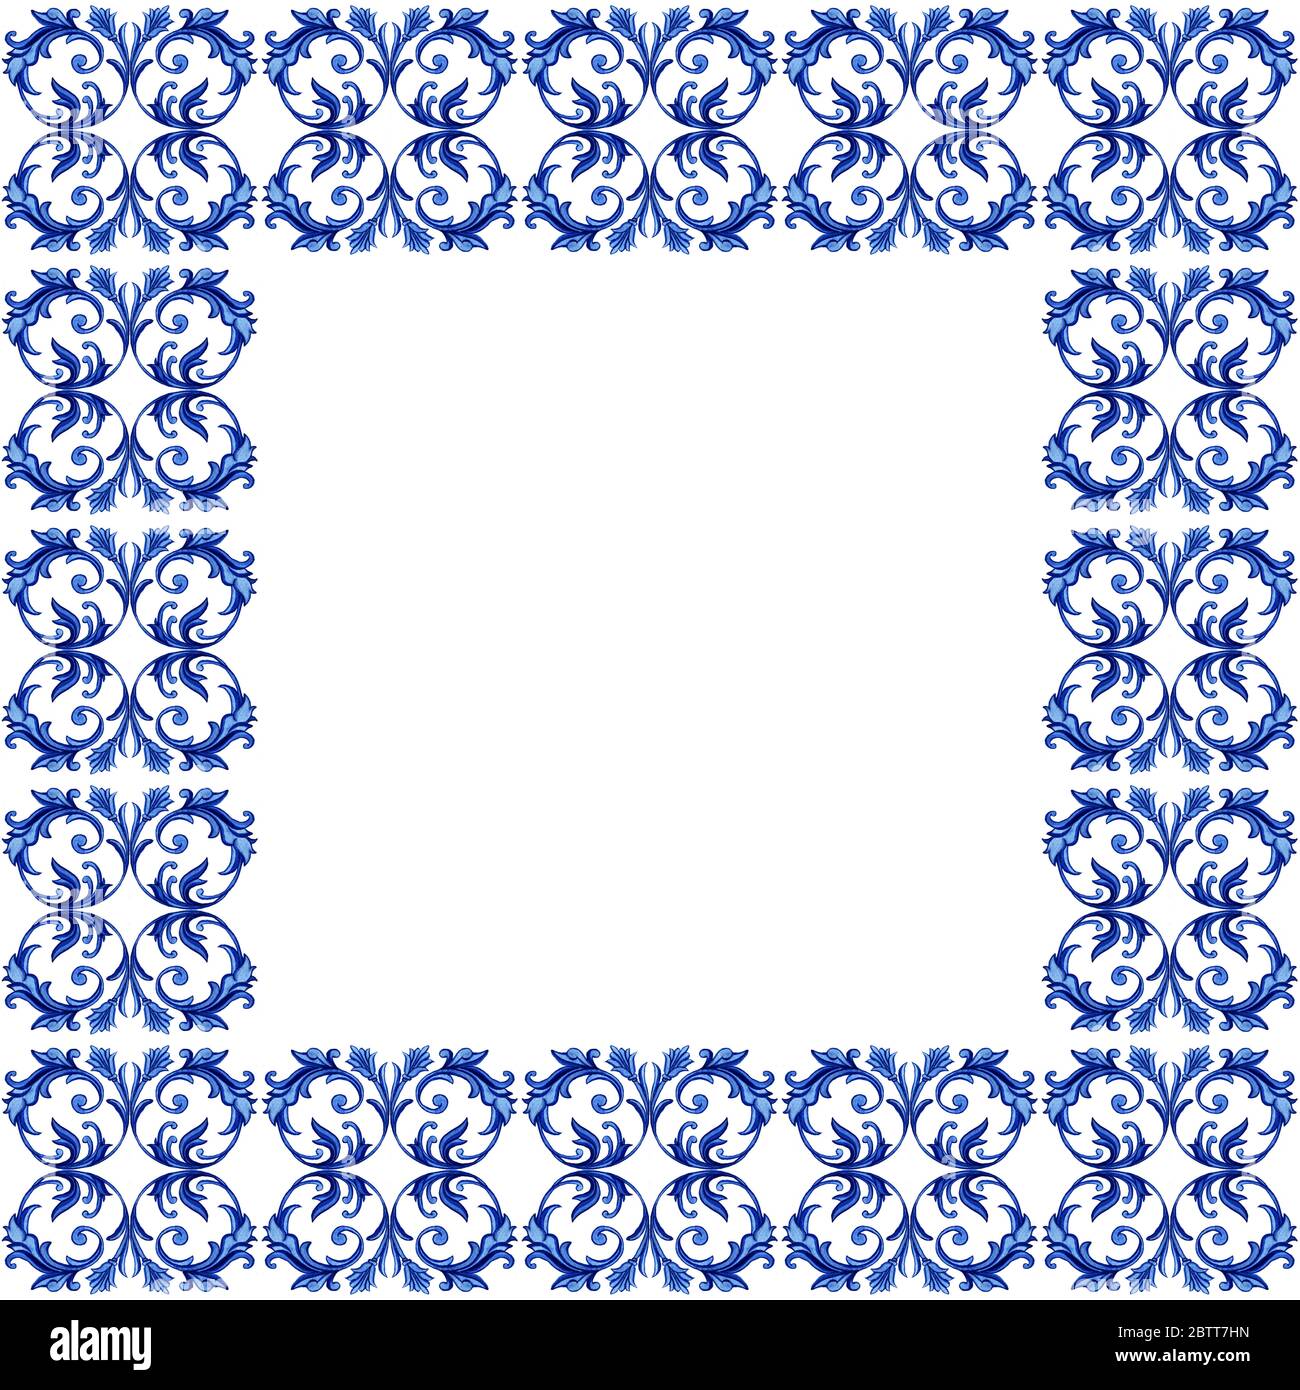 Portoghese Azulejos telaio piastrella. Tradizionale decorazione in piastrelle di mosaico portoghese. Bordo blu acquerello. Ceramiche antiche, abbellite, patrimonio. Pannello dipinto con motivi floreali Foto Stock